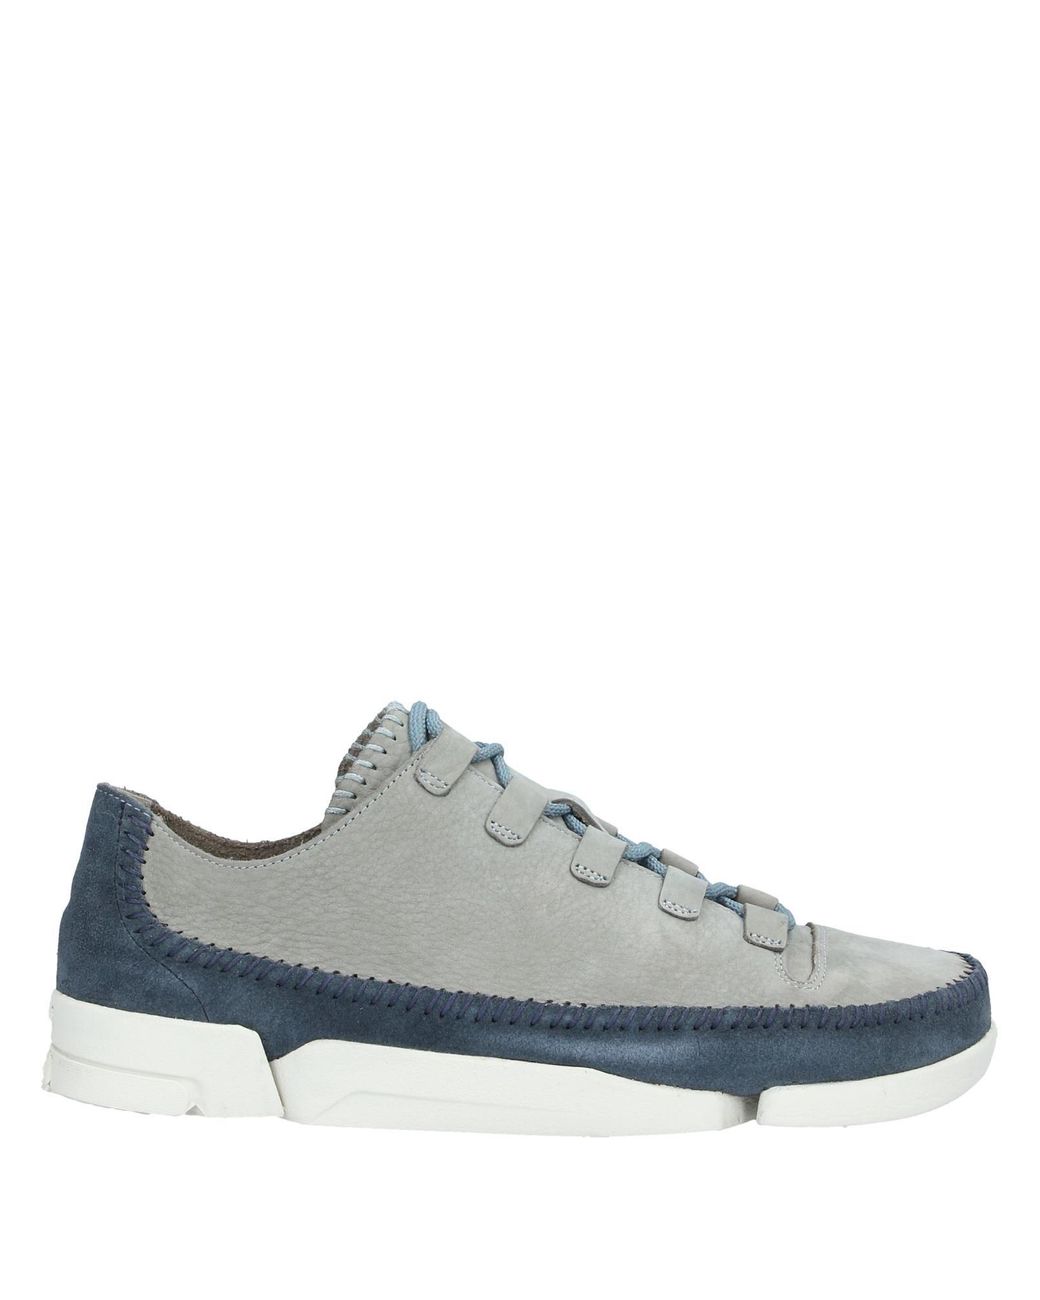 Clarks Low-tops & Sneakers in Grey (Gray) for Men - Lyst